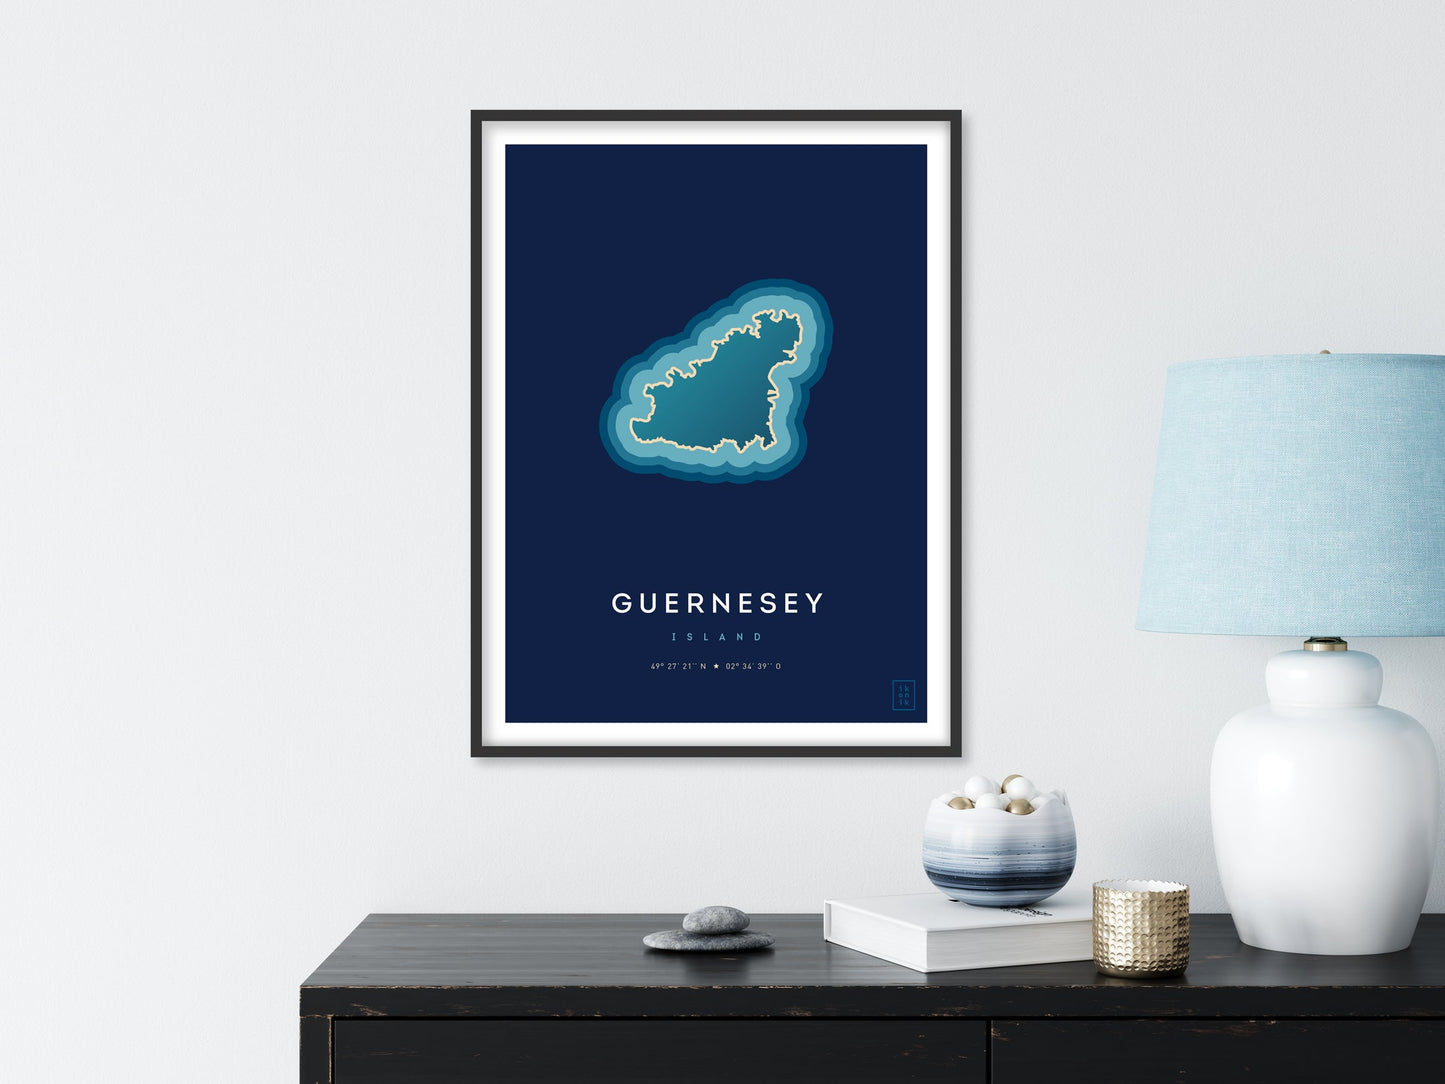 Affiche de l'île de Guernesey